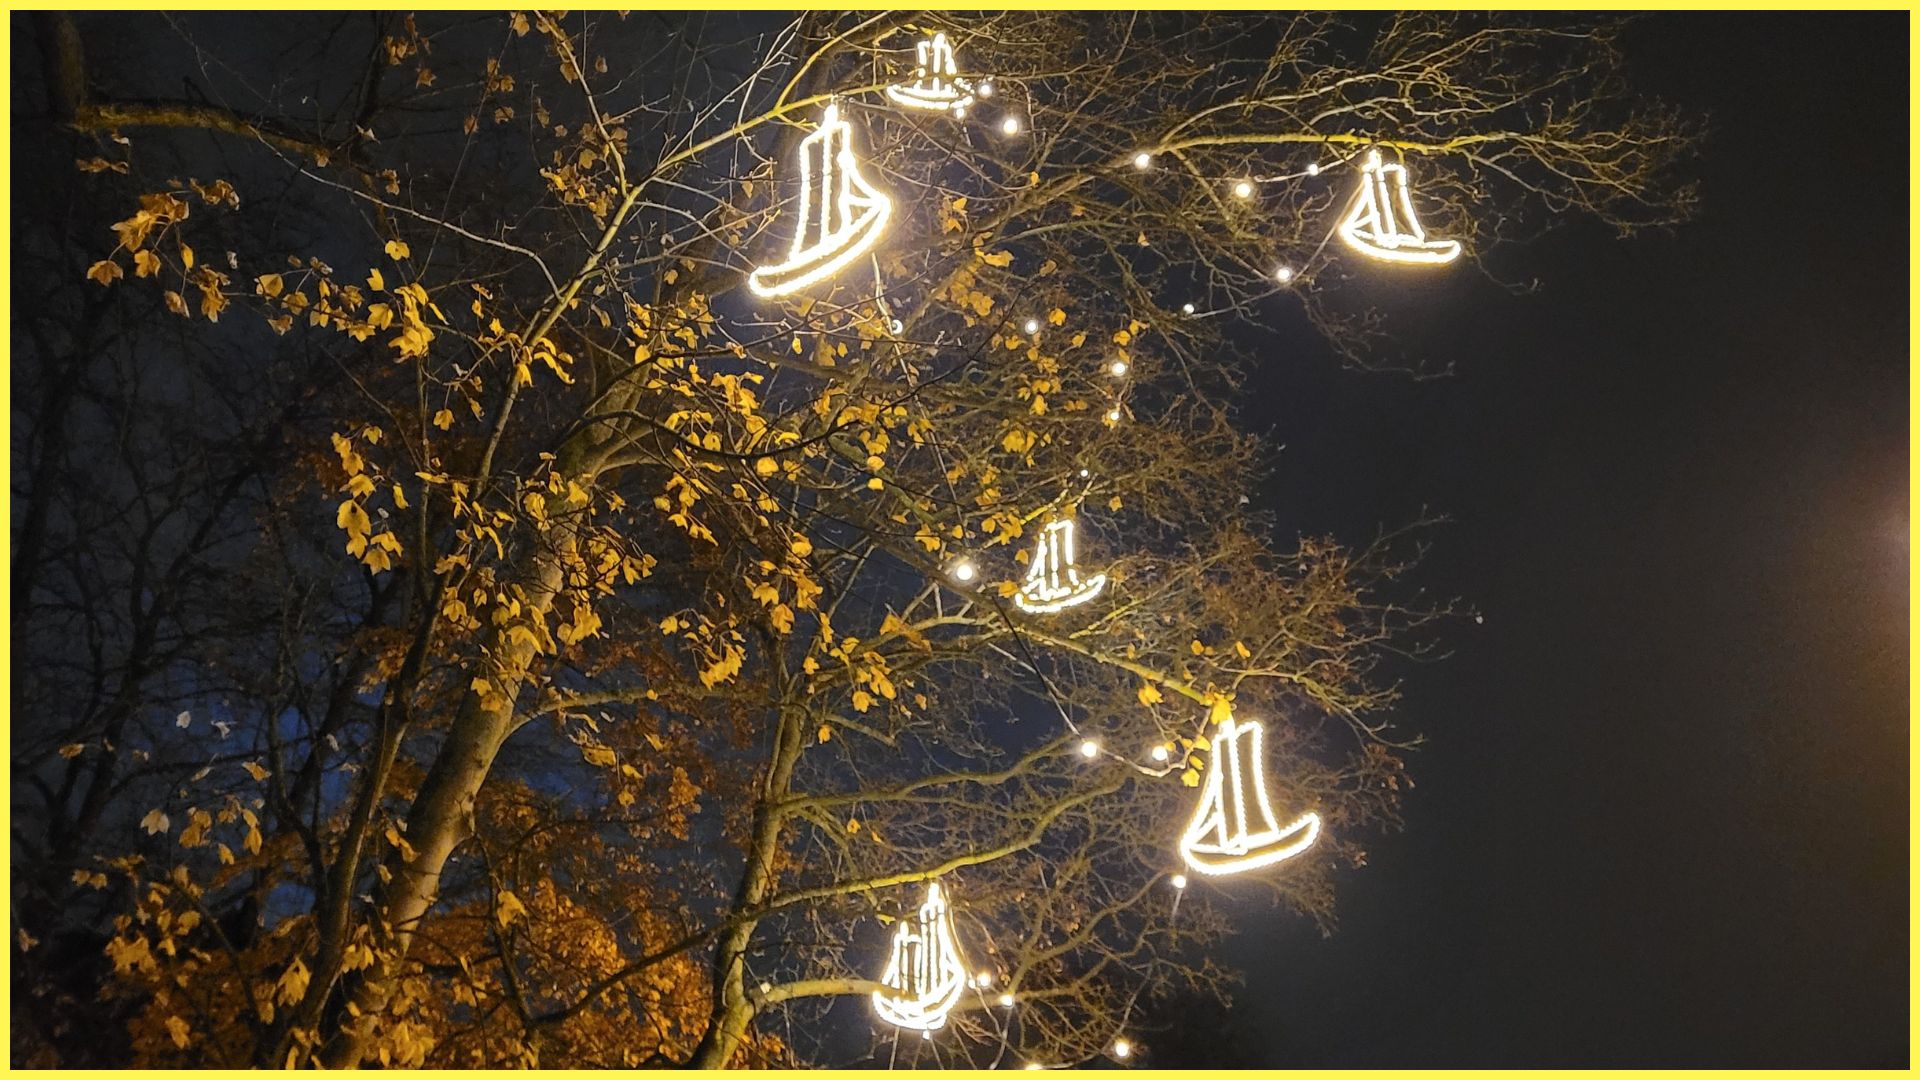 Blick auf einen Baum vor Nachthimmel, in dem beleuchtete Schiffe hängen. Diese Schiffe heißen Ewer.